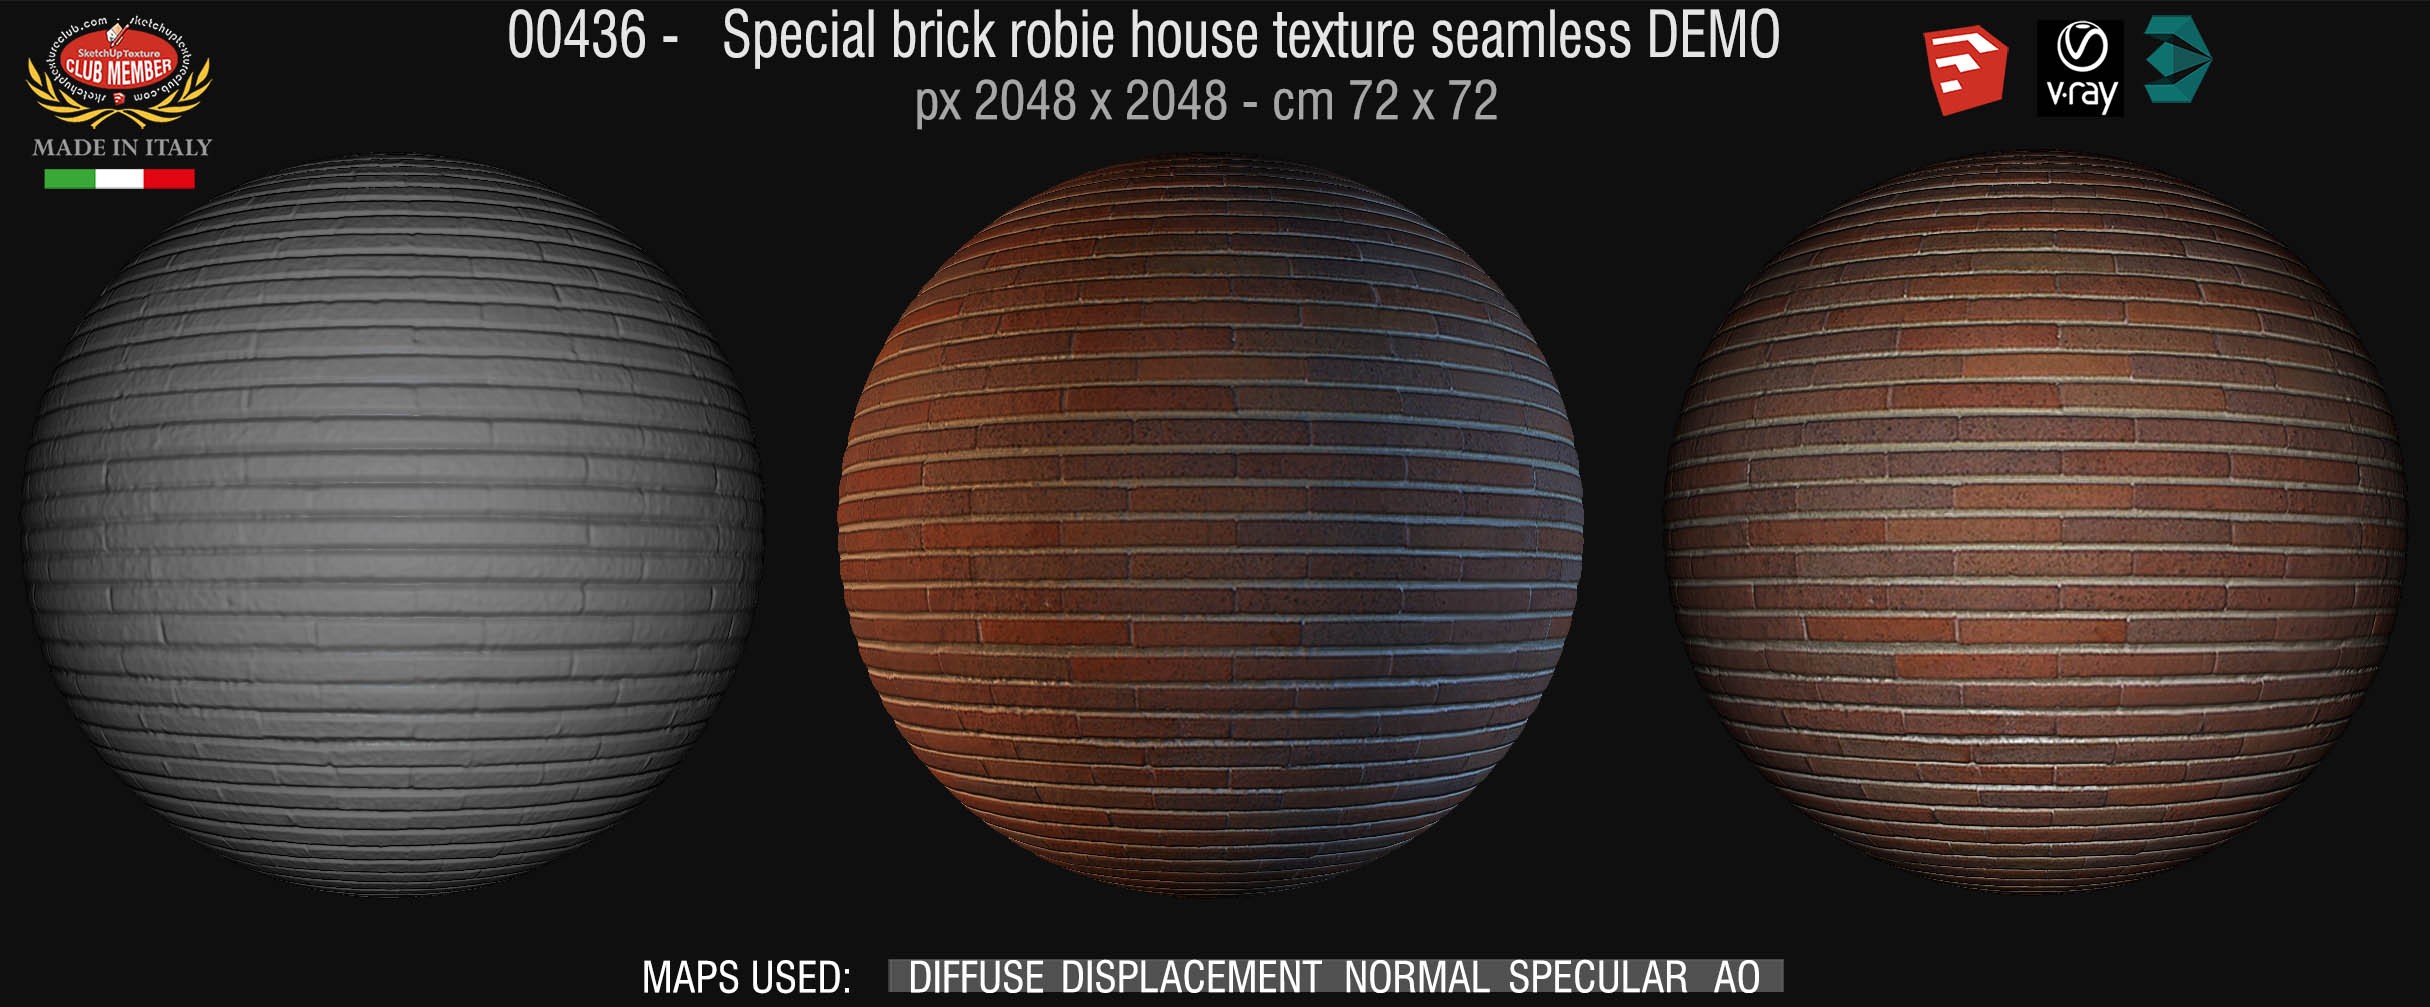 00436 special brick robie house texture seamless + maps DEMO